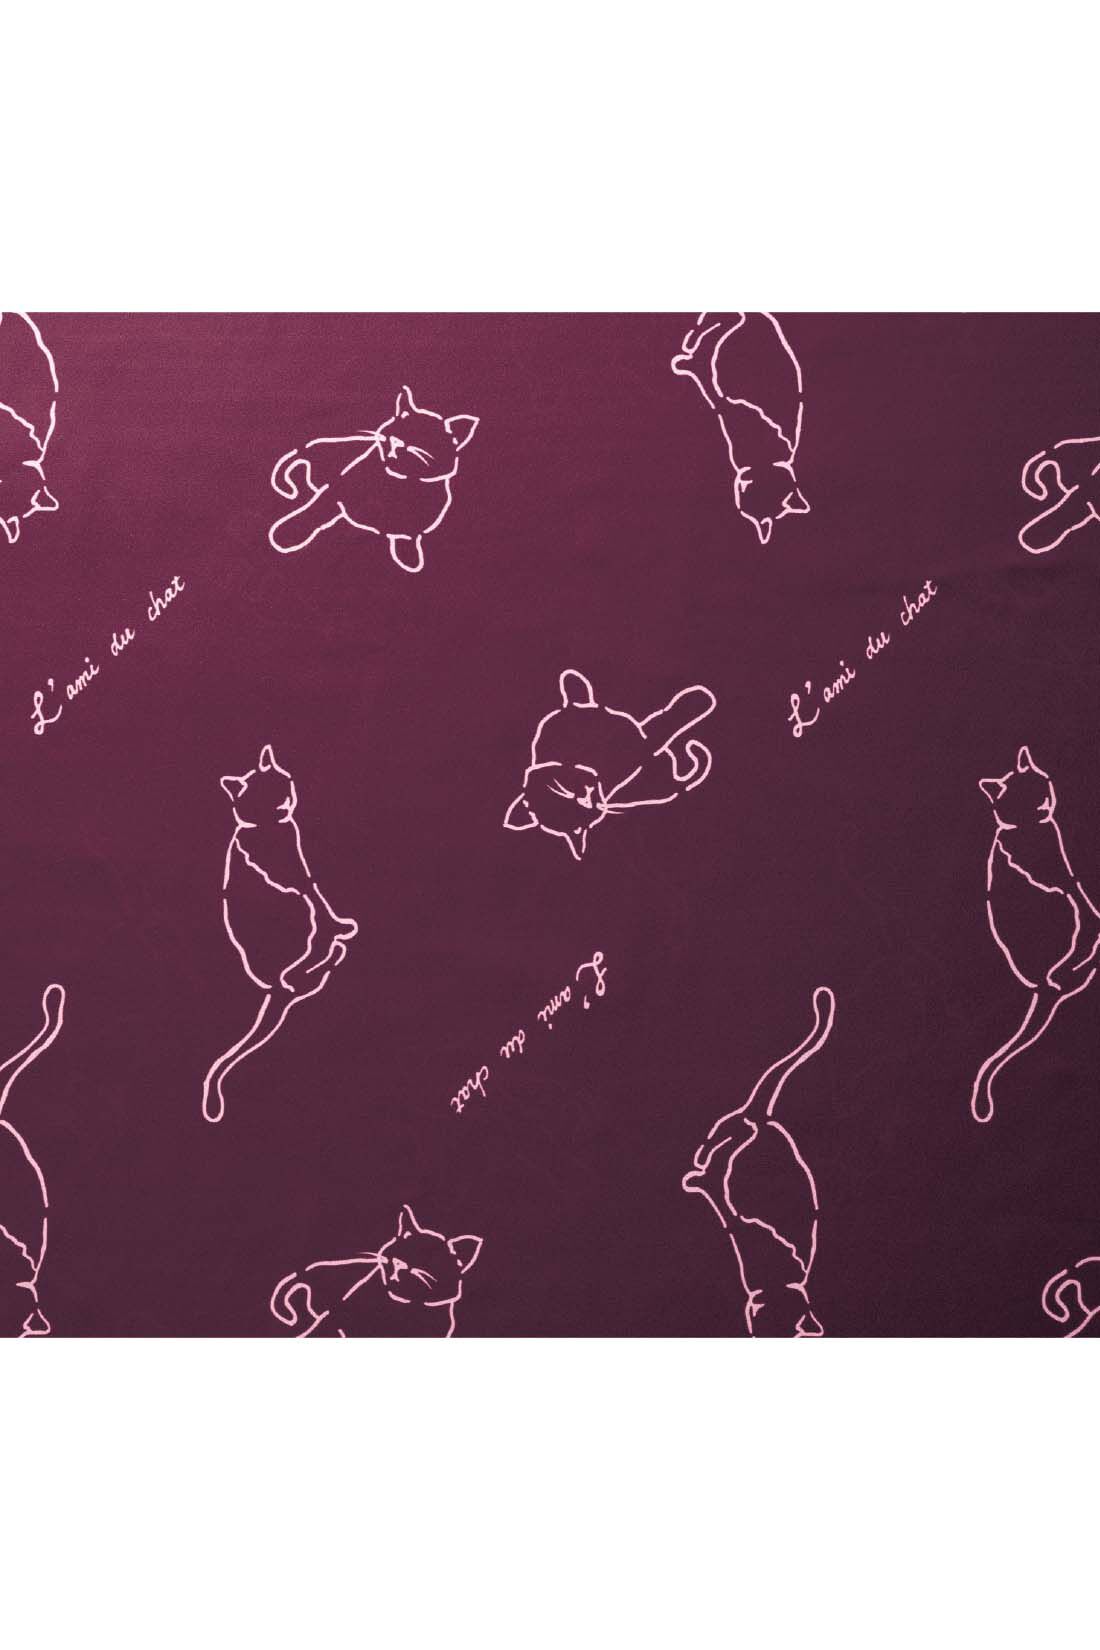 シロップ．|お友だちにゃんこのロングワンピース|小豆色の生色に薄ピンクの猫のシルエットと文字がオトナっぽい。